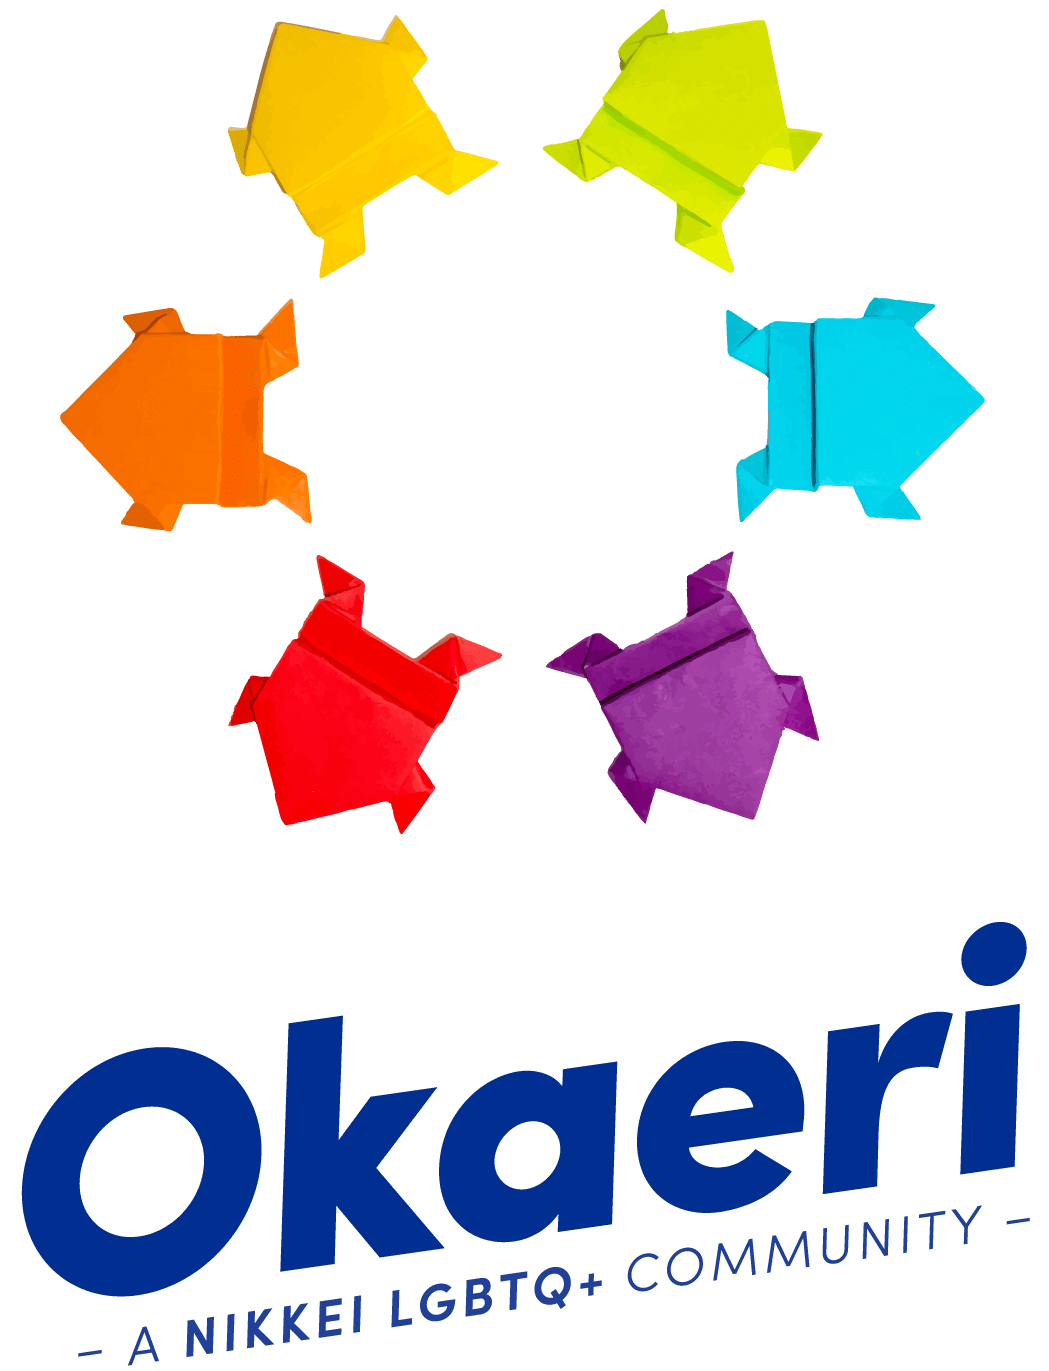 Okaeri – A Nikkei LGBTQ+ Community